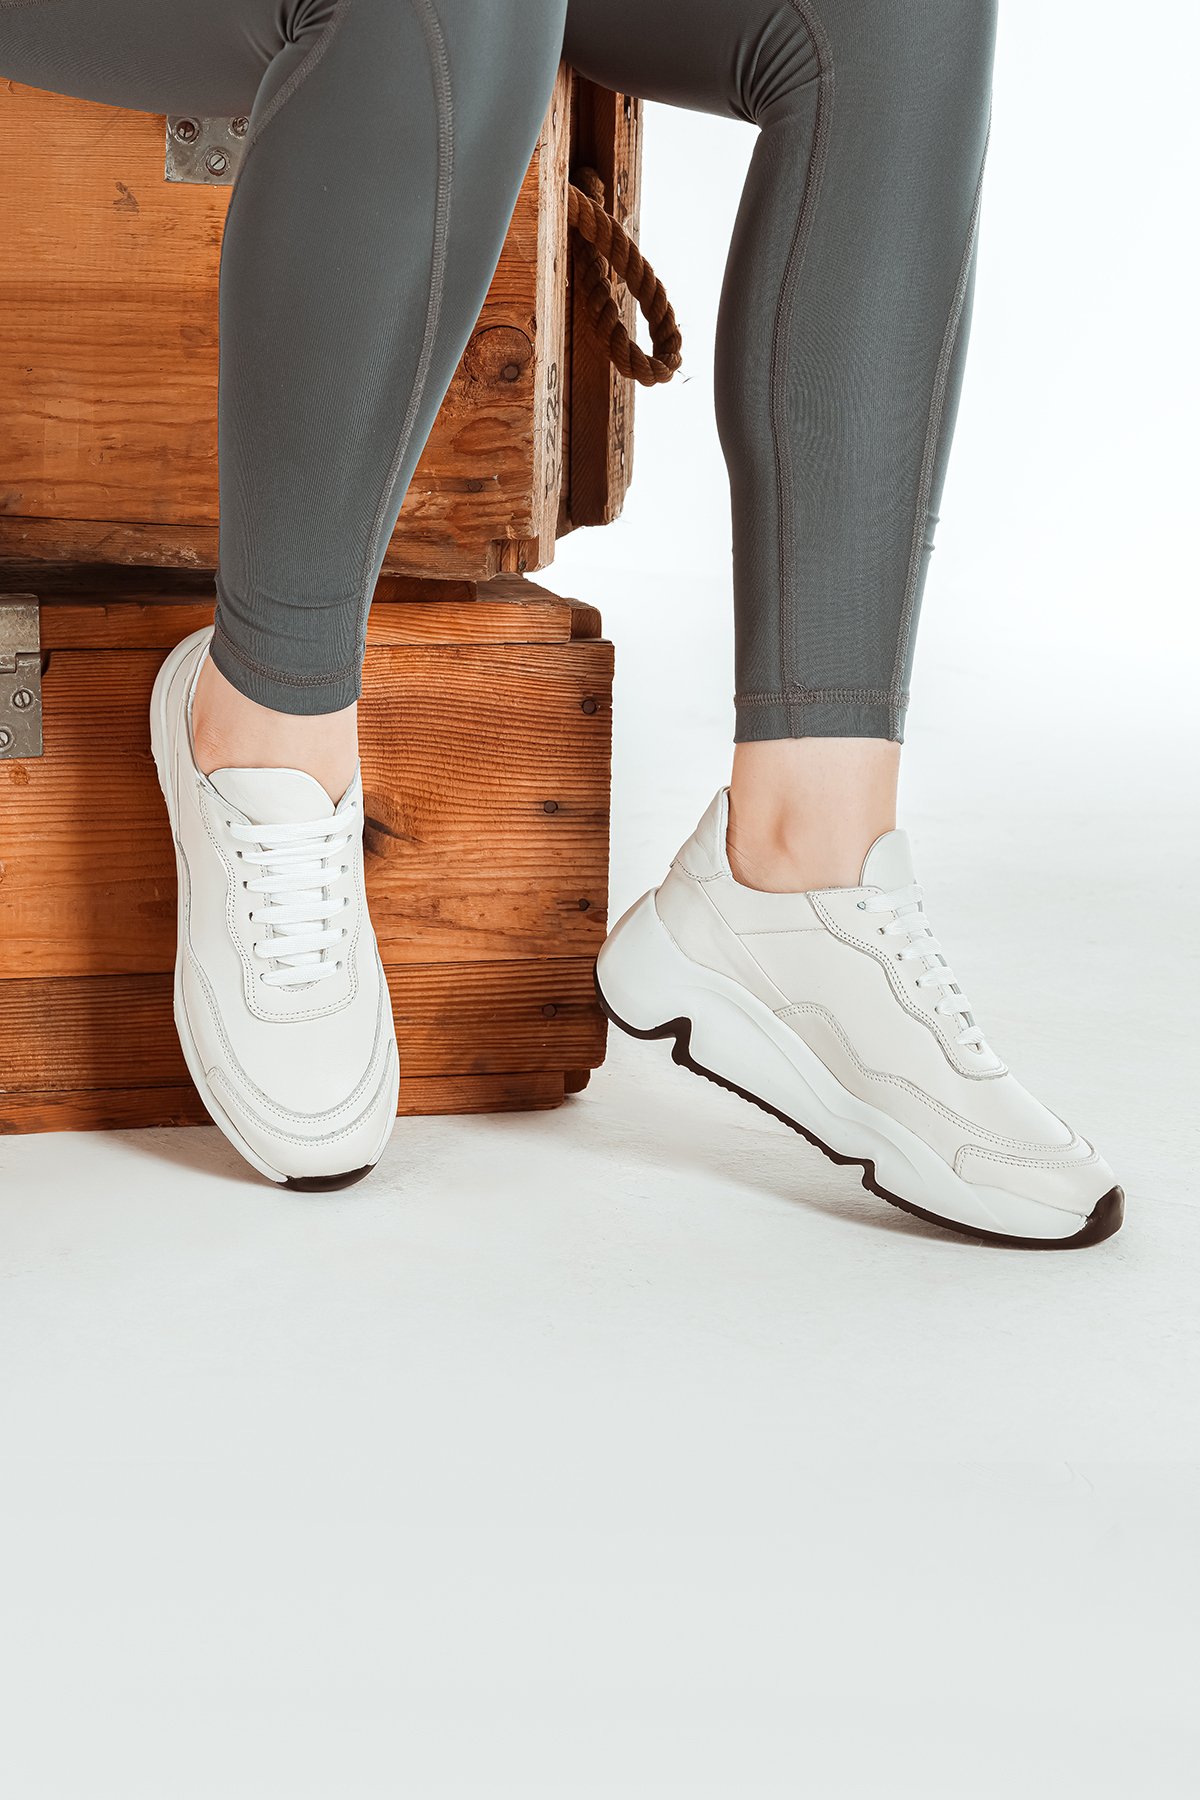 Cooliza Hakiki Deri Bağcıklı Eva Kalın Taban Günlük Rahat Kadın Spor Ayakkabı - Kırık Beyaz